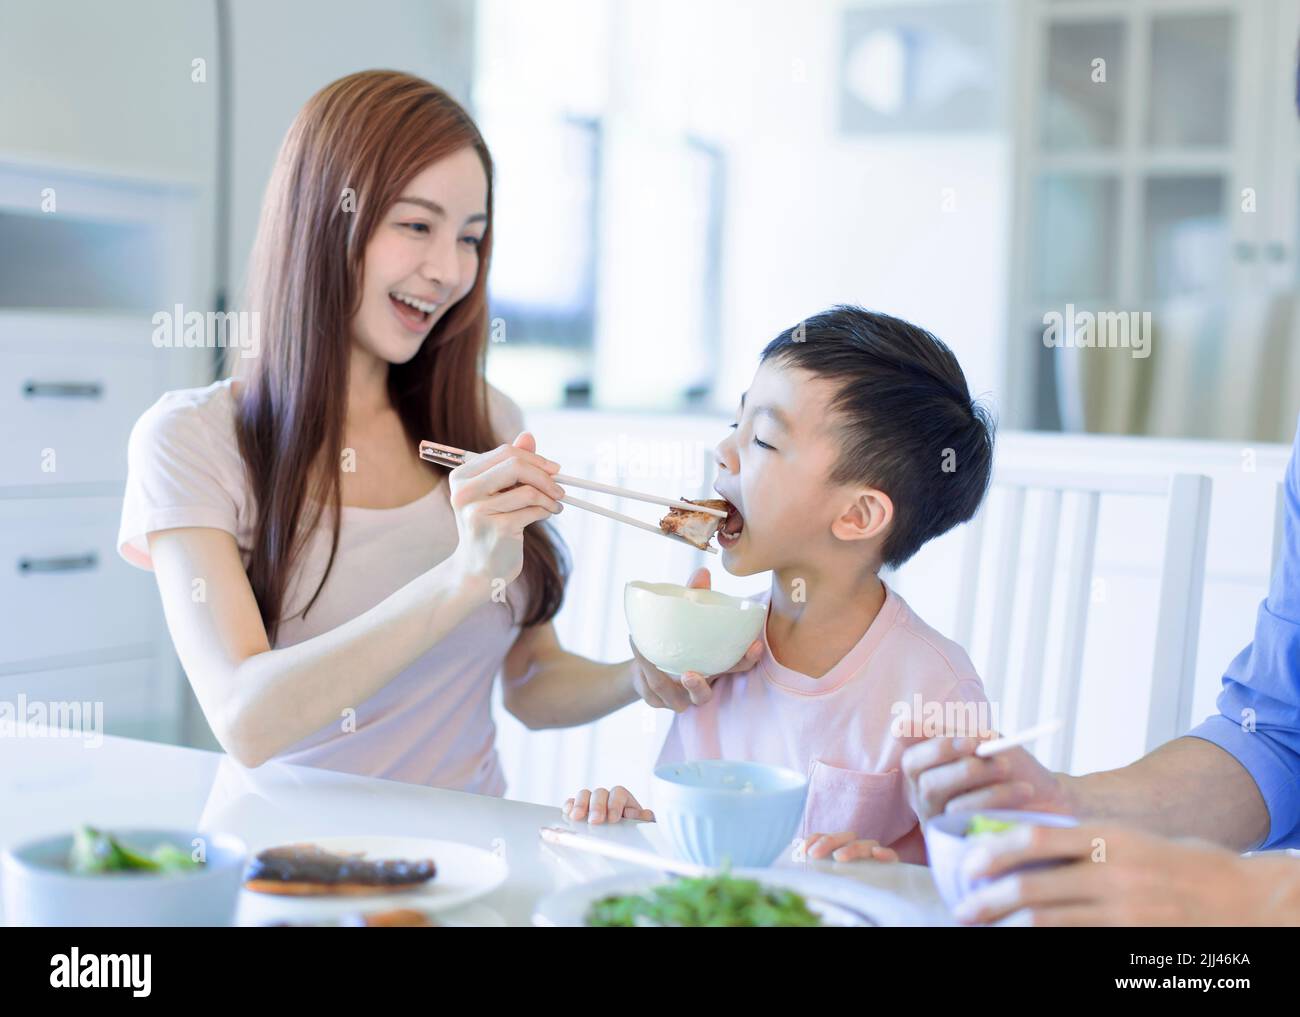 il ragazzo si diverta a mangiare cibo con padre e madre. Una felice famiglia asiatica che cena a casa Foto Stock